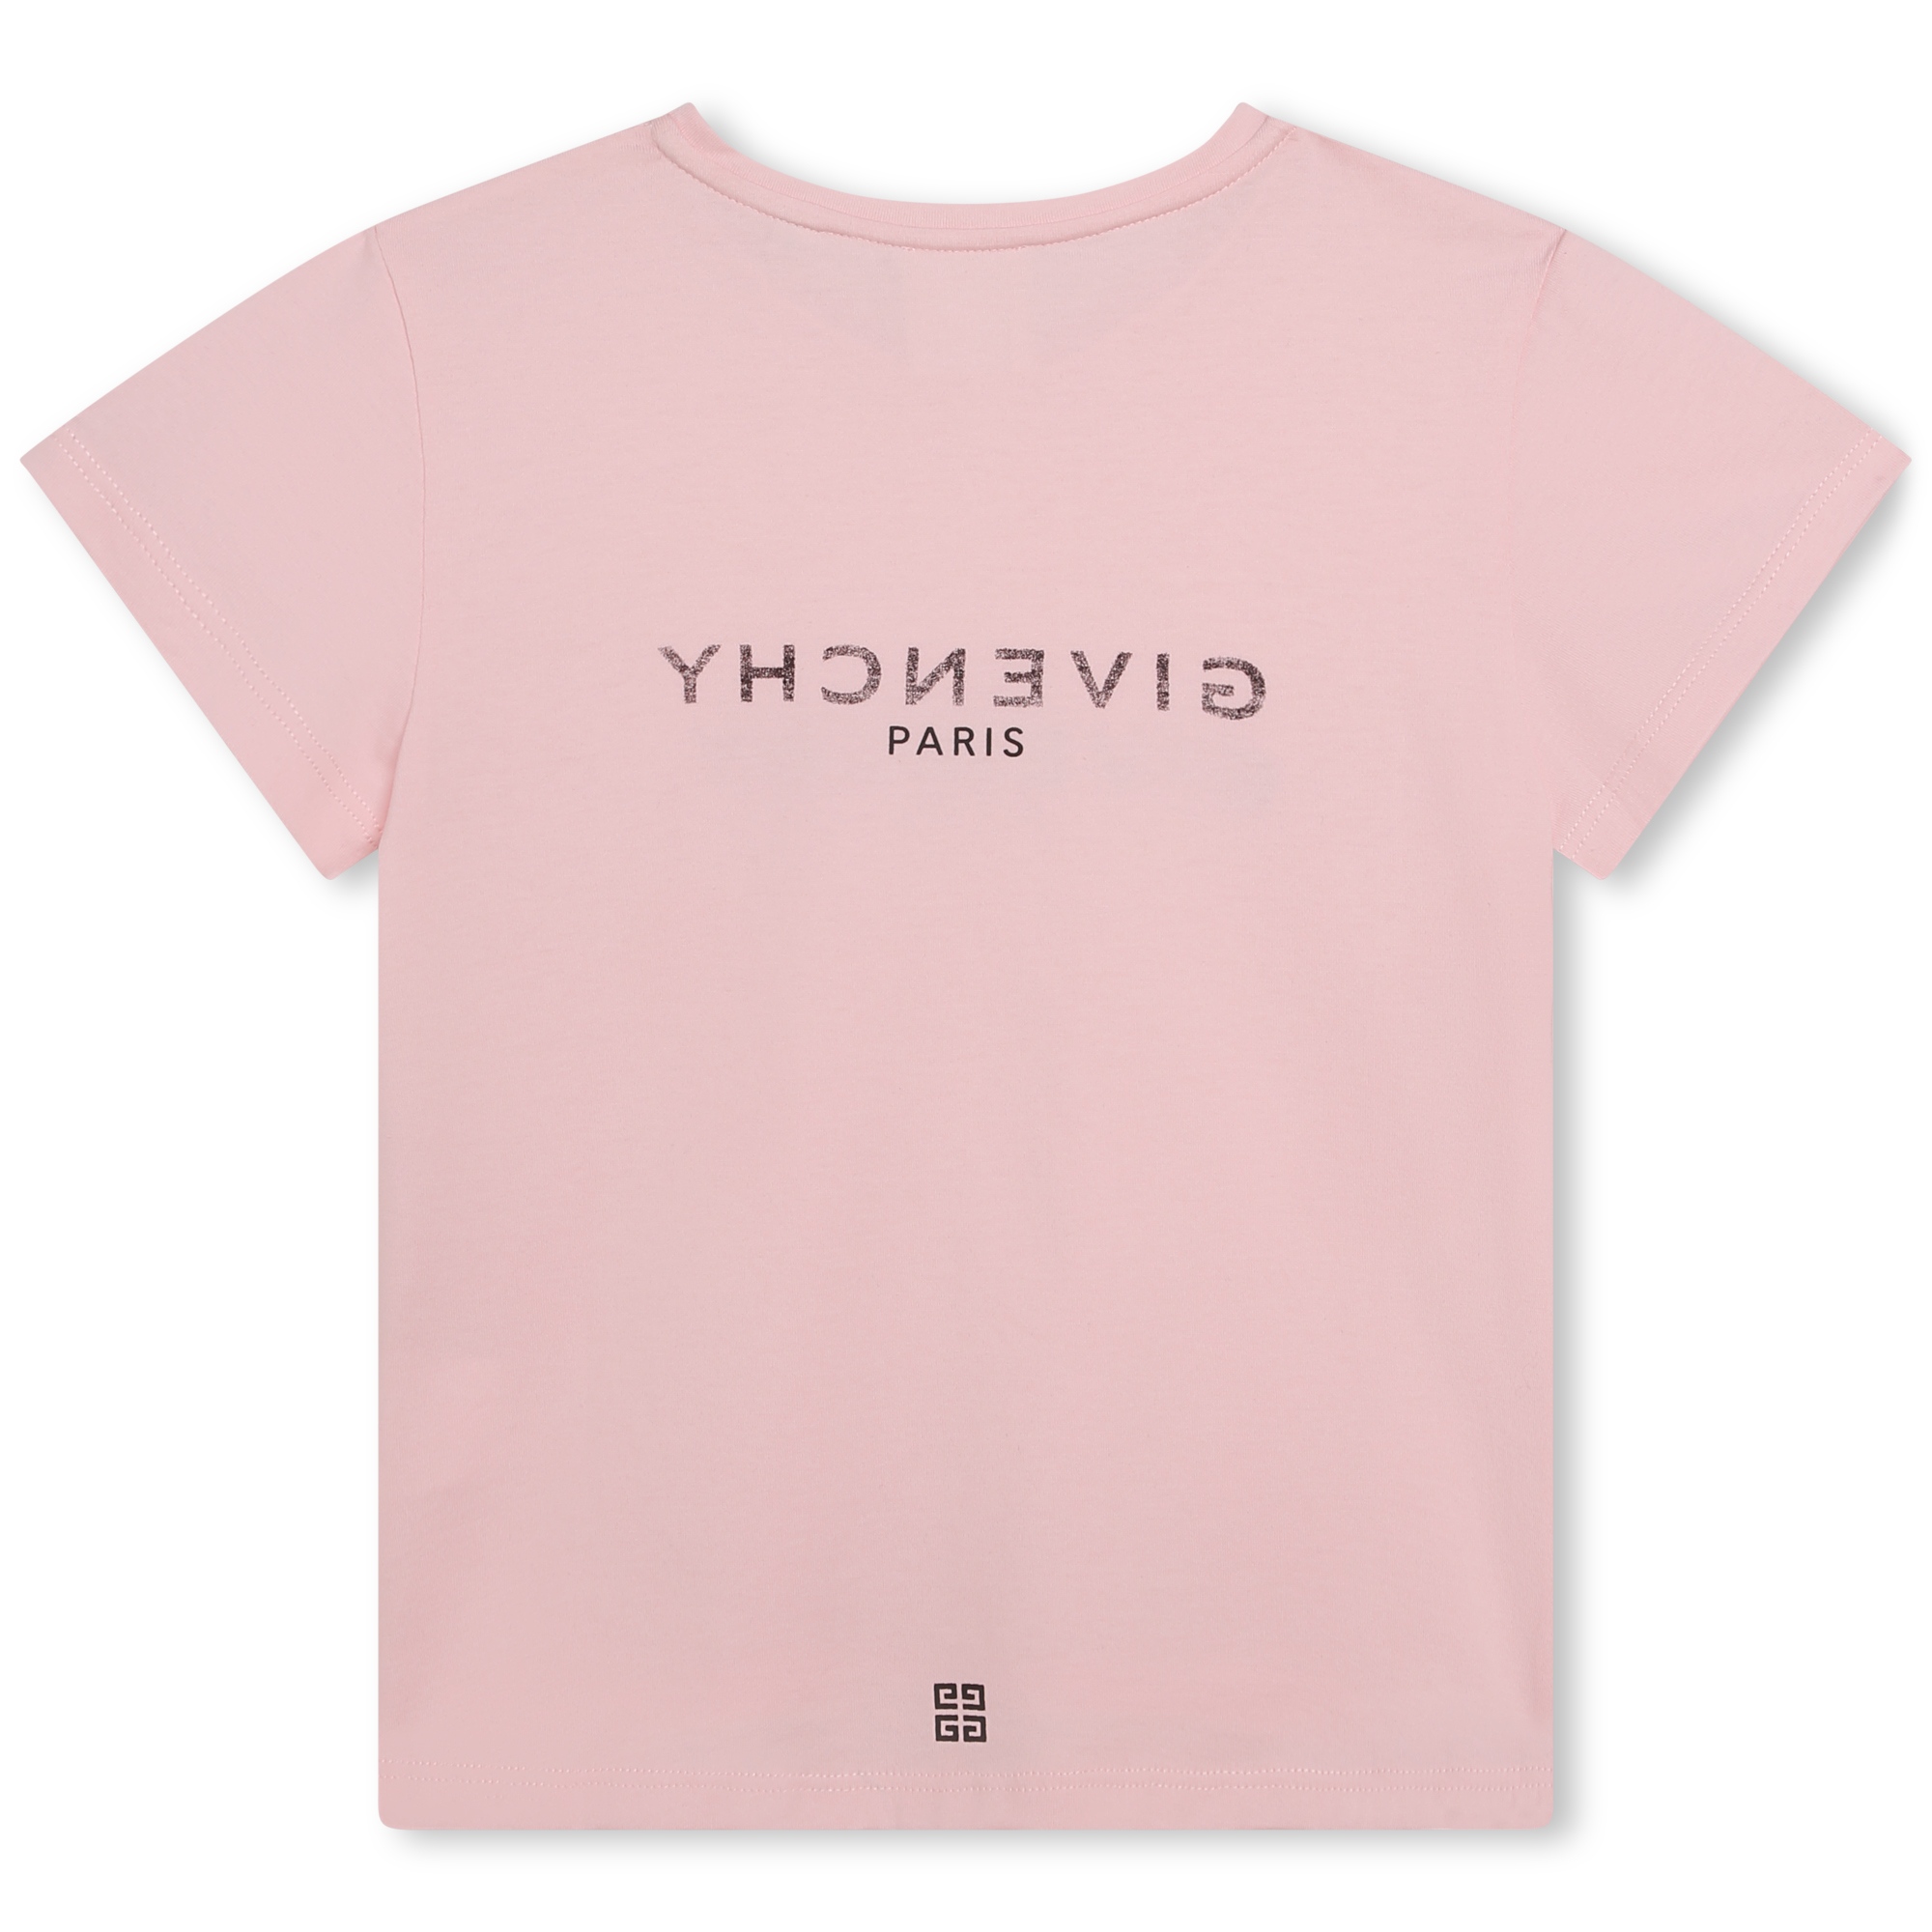 T-Shirt mit umgekehrtem Print GIVENCHY Für MÄDCHEN